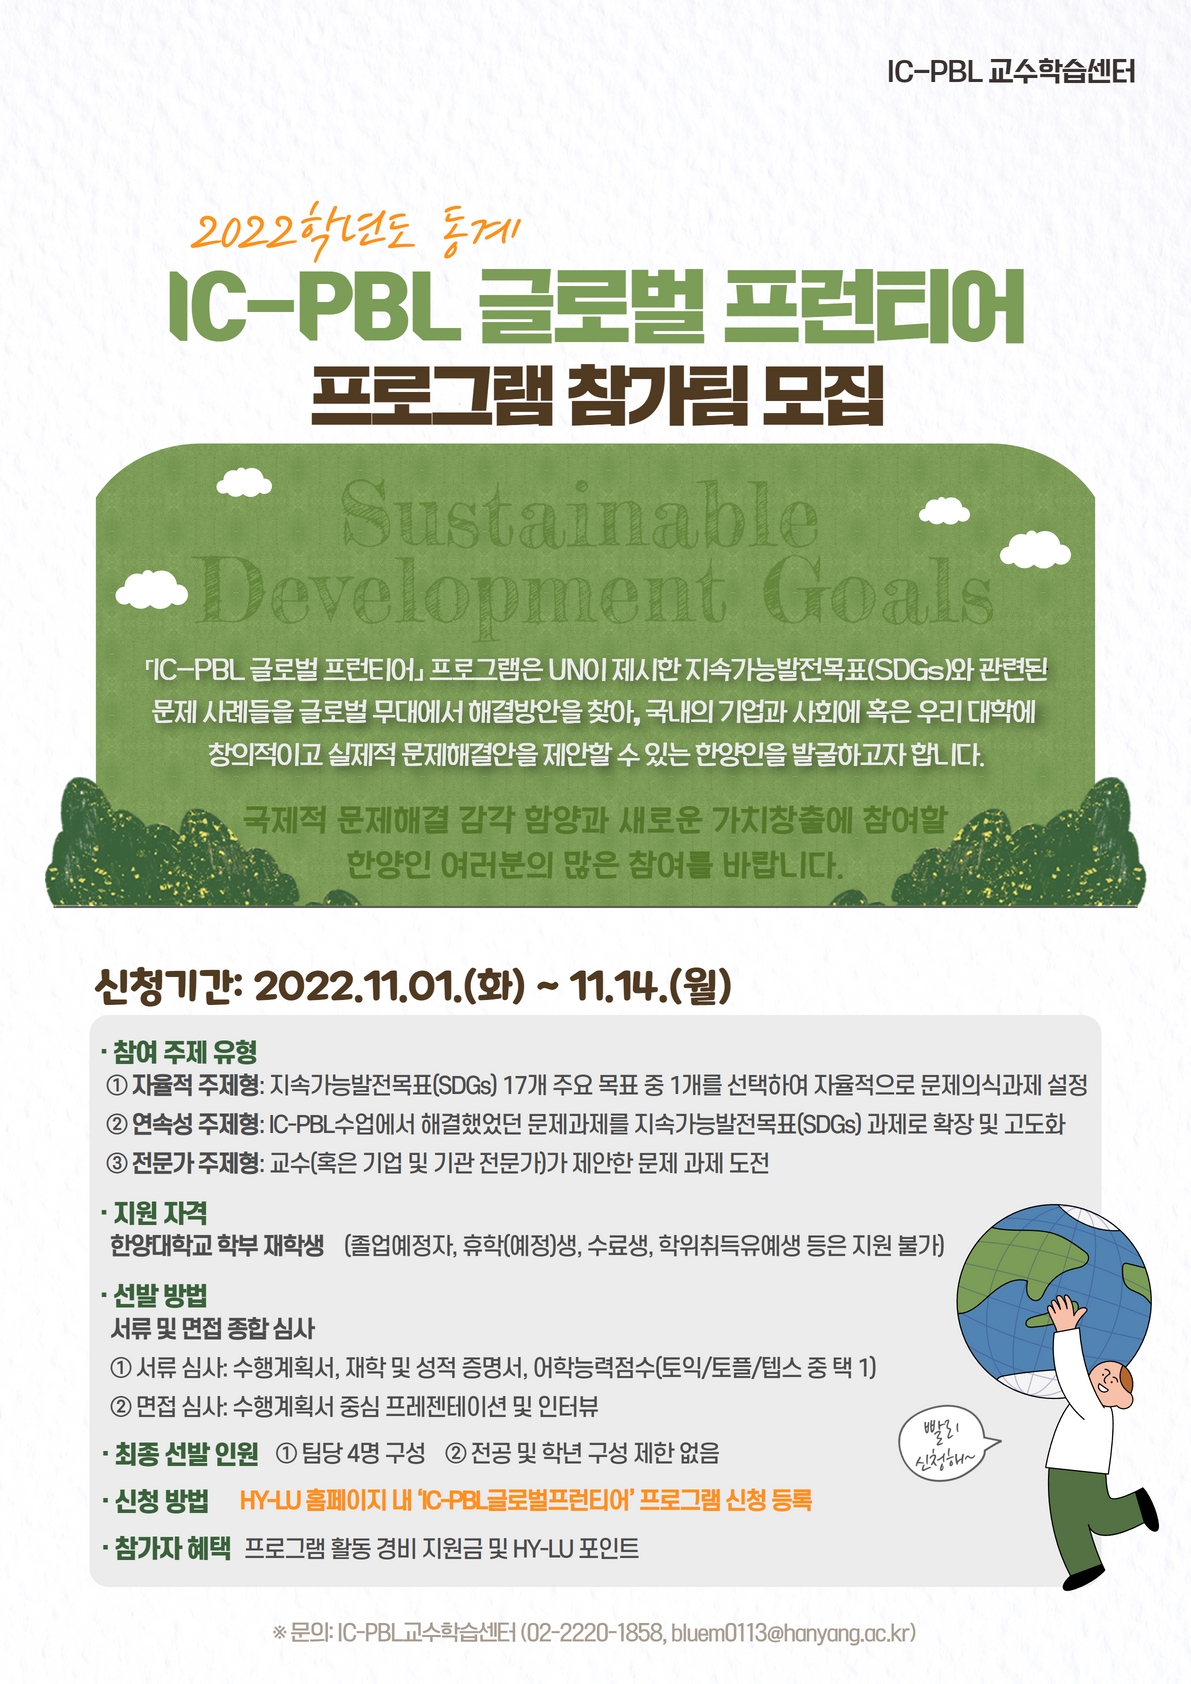 ◆ IC-PBL 글로벌 프런티어 프로그램 참가팀 모집 ◆